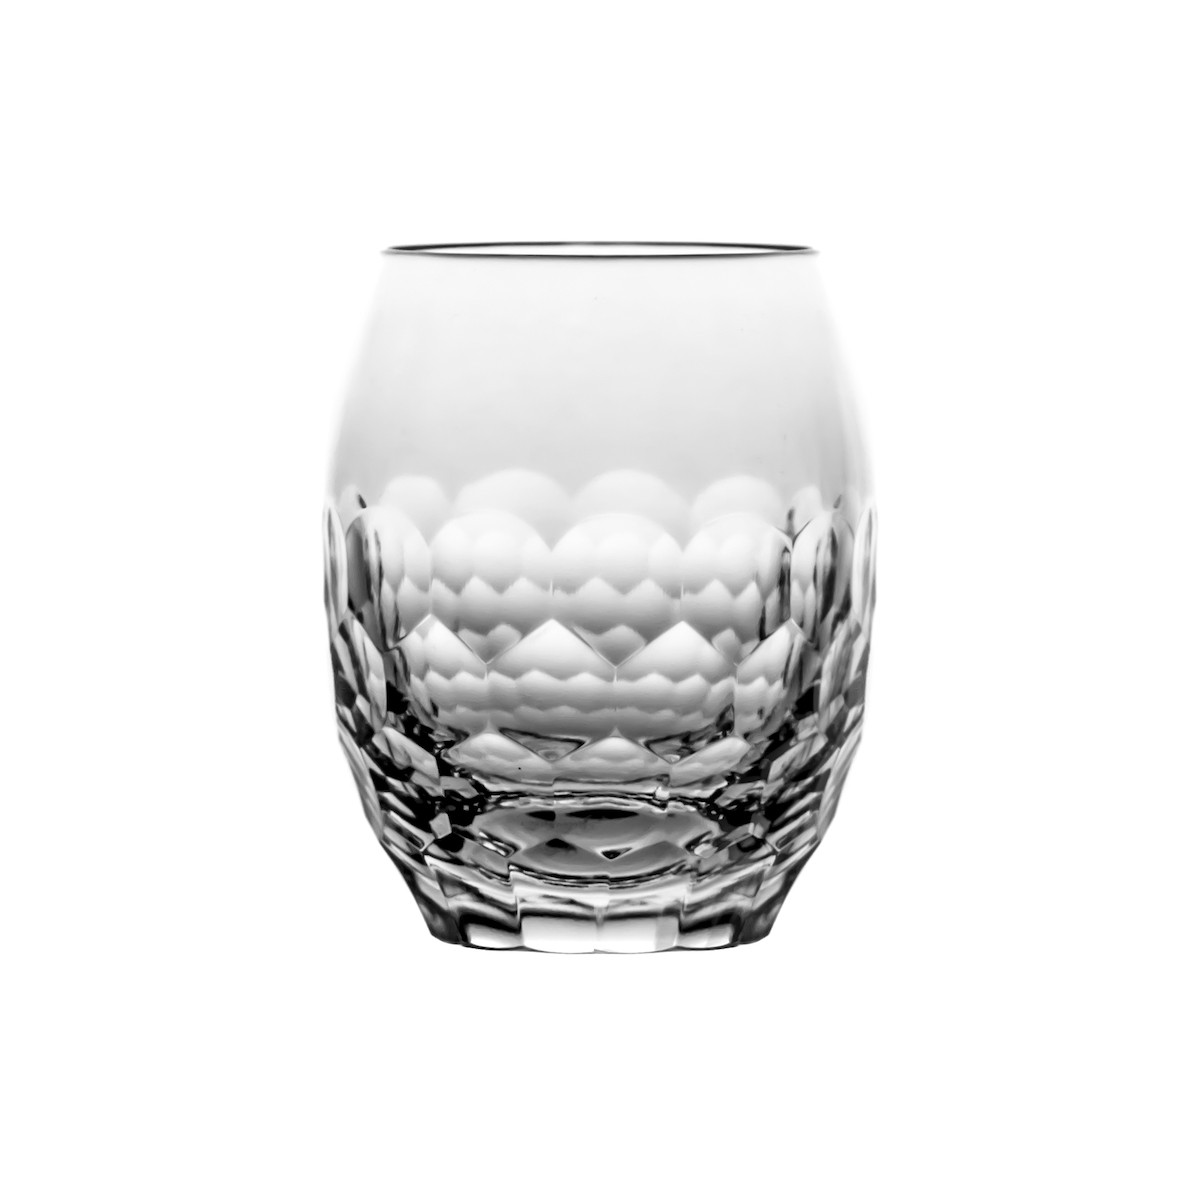 https://artstore24.ch/349-large_default/crystal-vodka-glasses-60-ml-transparent-set-of-6-.jpg